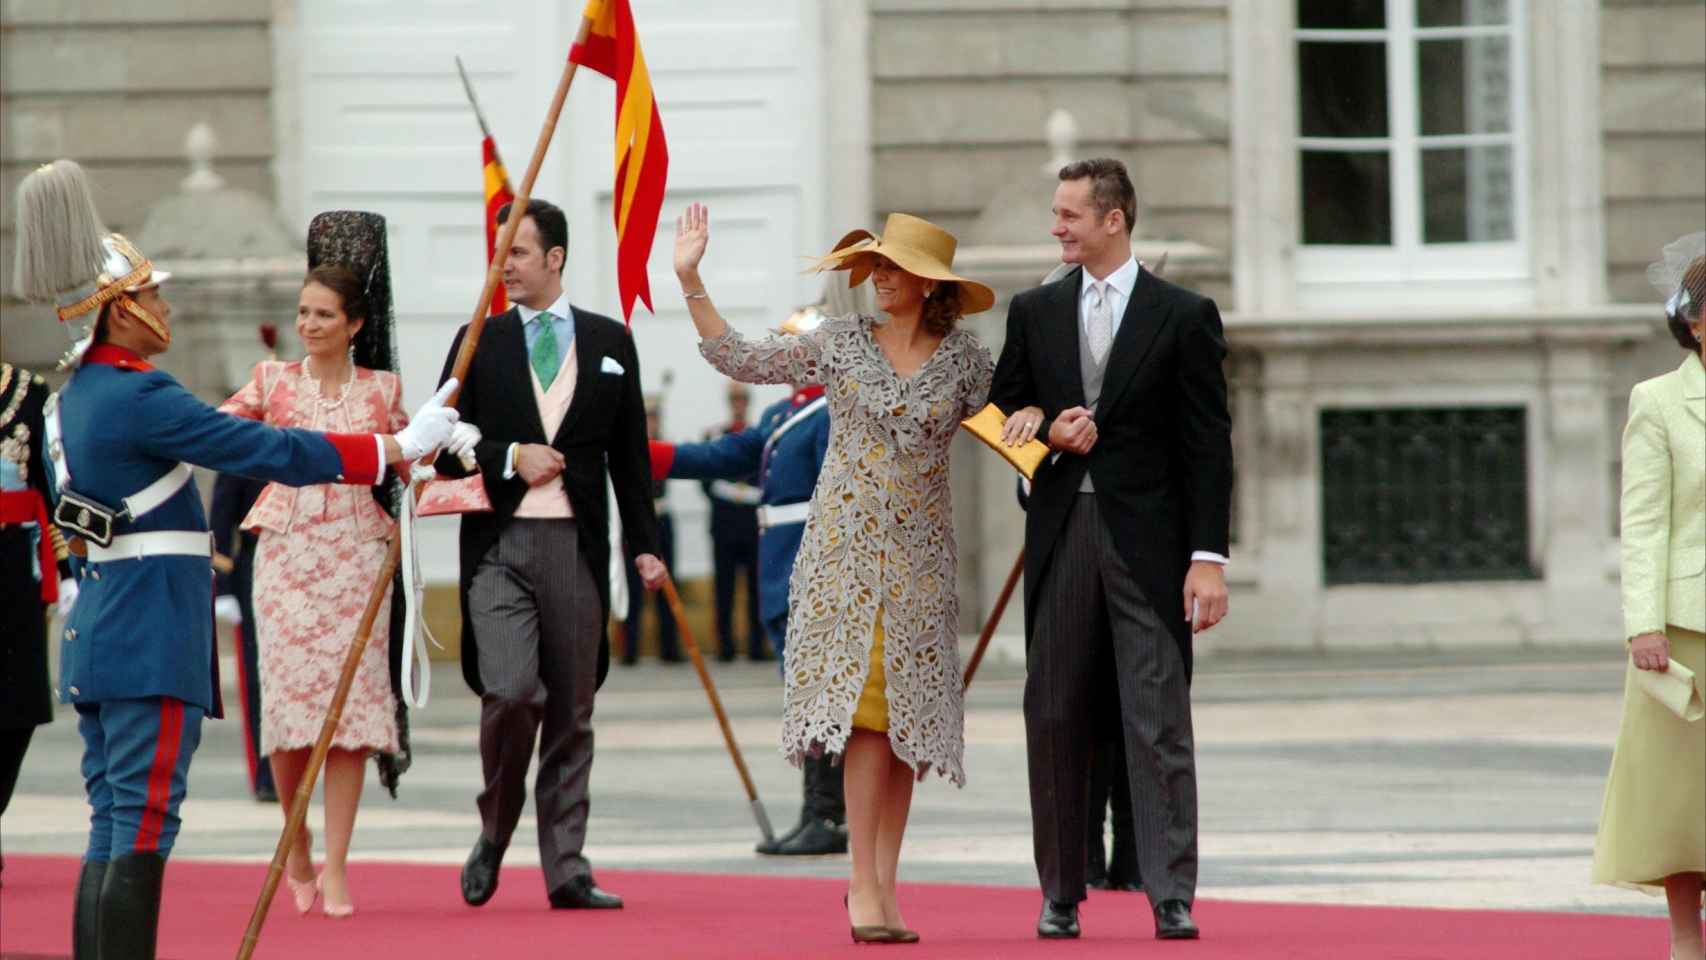 La infanta Cristina e Iñaki Urdangarin seguidos de la infanta Elena y Jaime de Marichalar en la boda de don Felipe y doña Letizia.